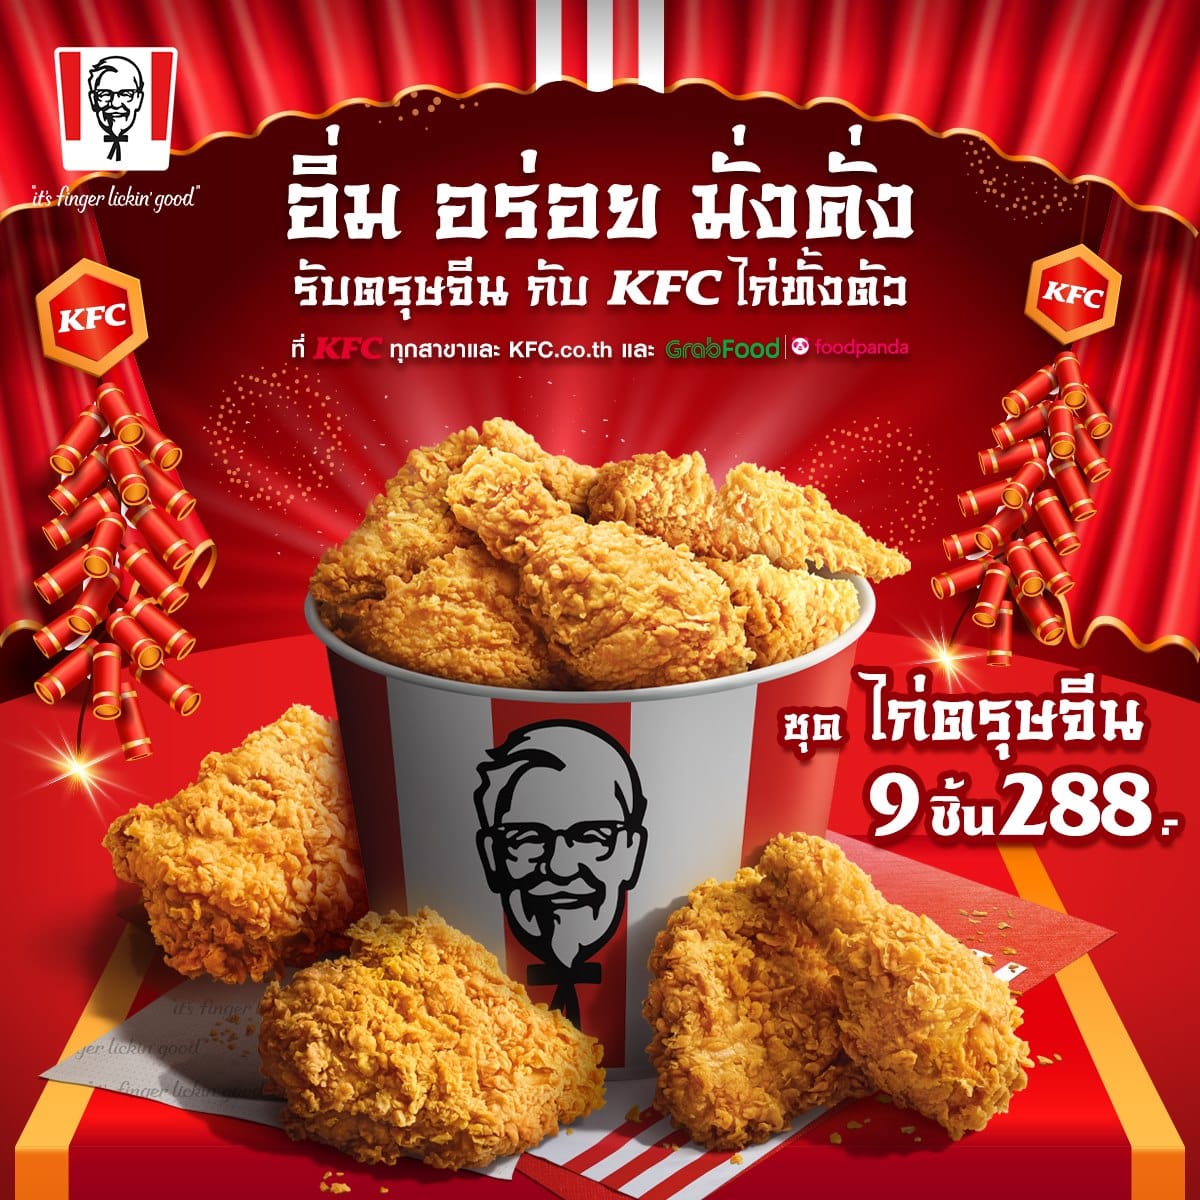 Kfc ชุด ไก่ตรุษจีน ไก่ทั้งตัว 9 ชิ้น 288 บาท (23 - 25 มกราคม 2563) -  Thpromotion